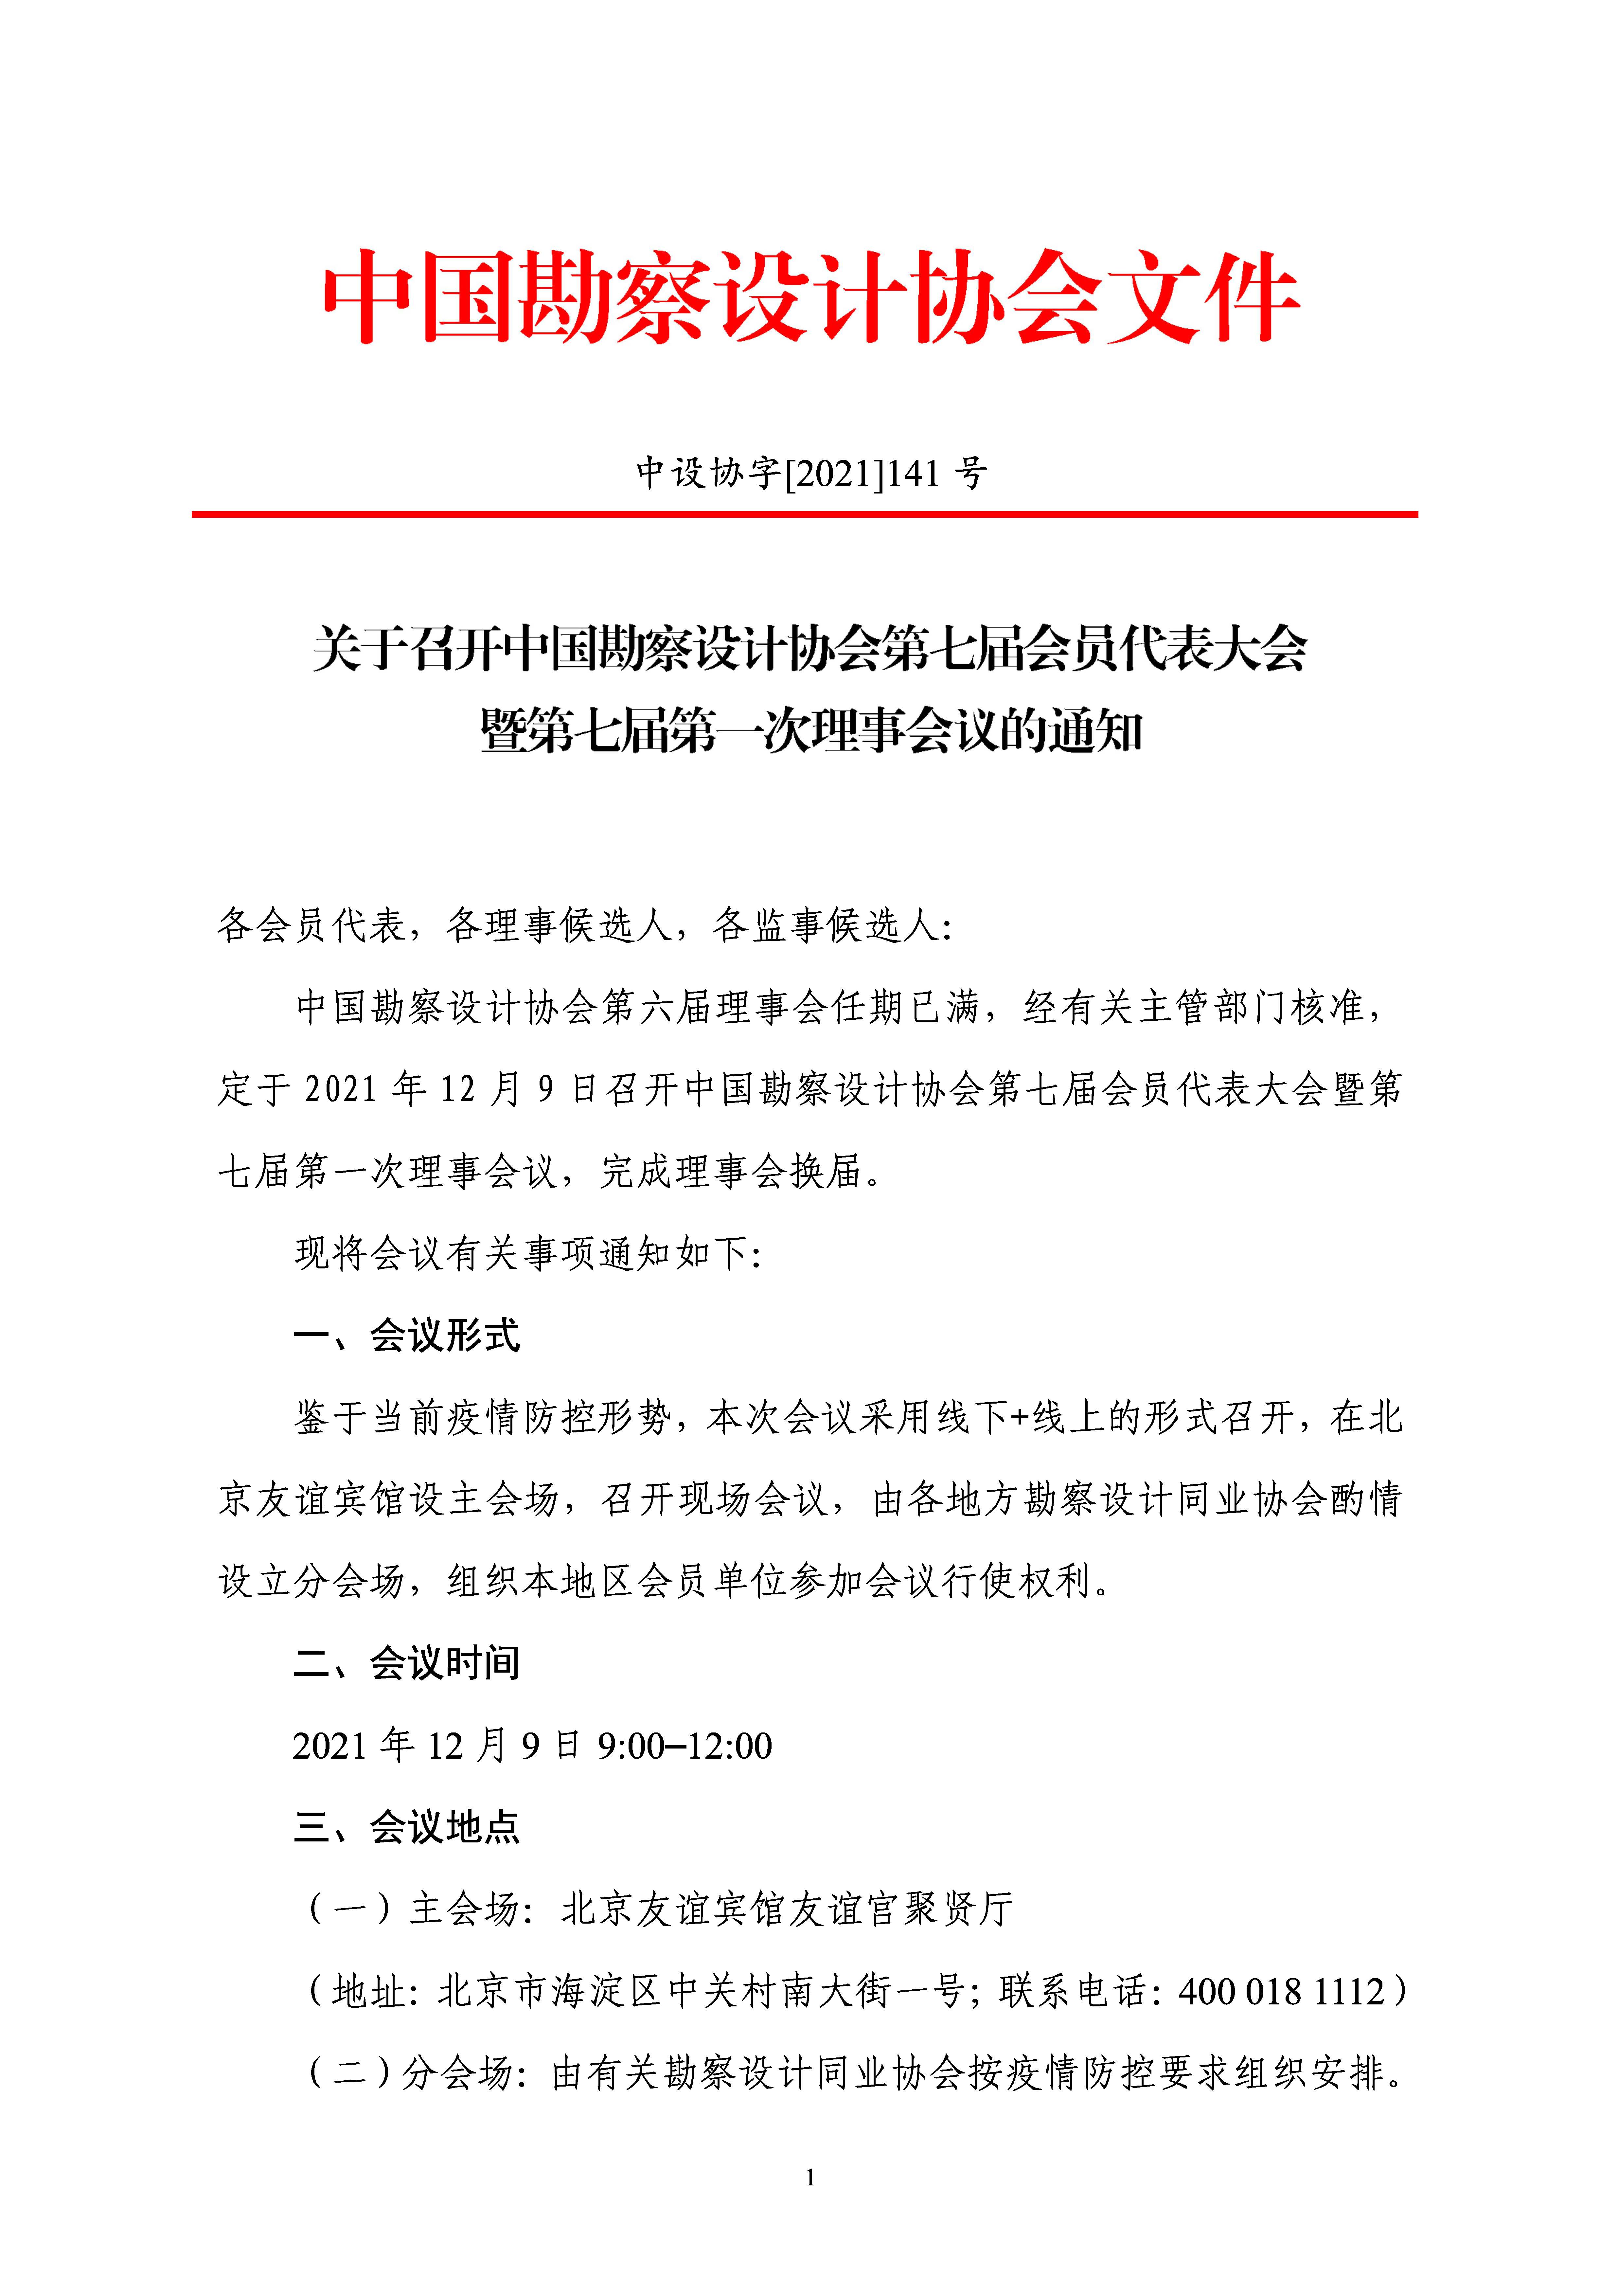 附件：关于召开中国勘察设计协会第七届会员代表大会暨第七届第一次理事会议的通知_页面_1.jpg